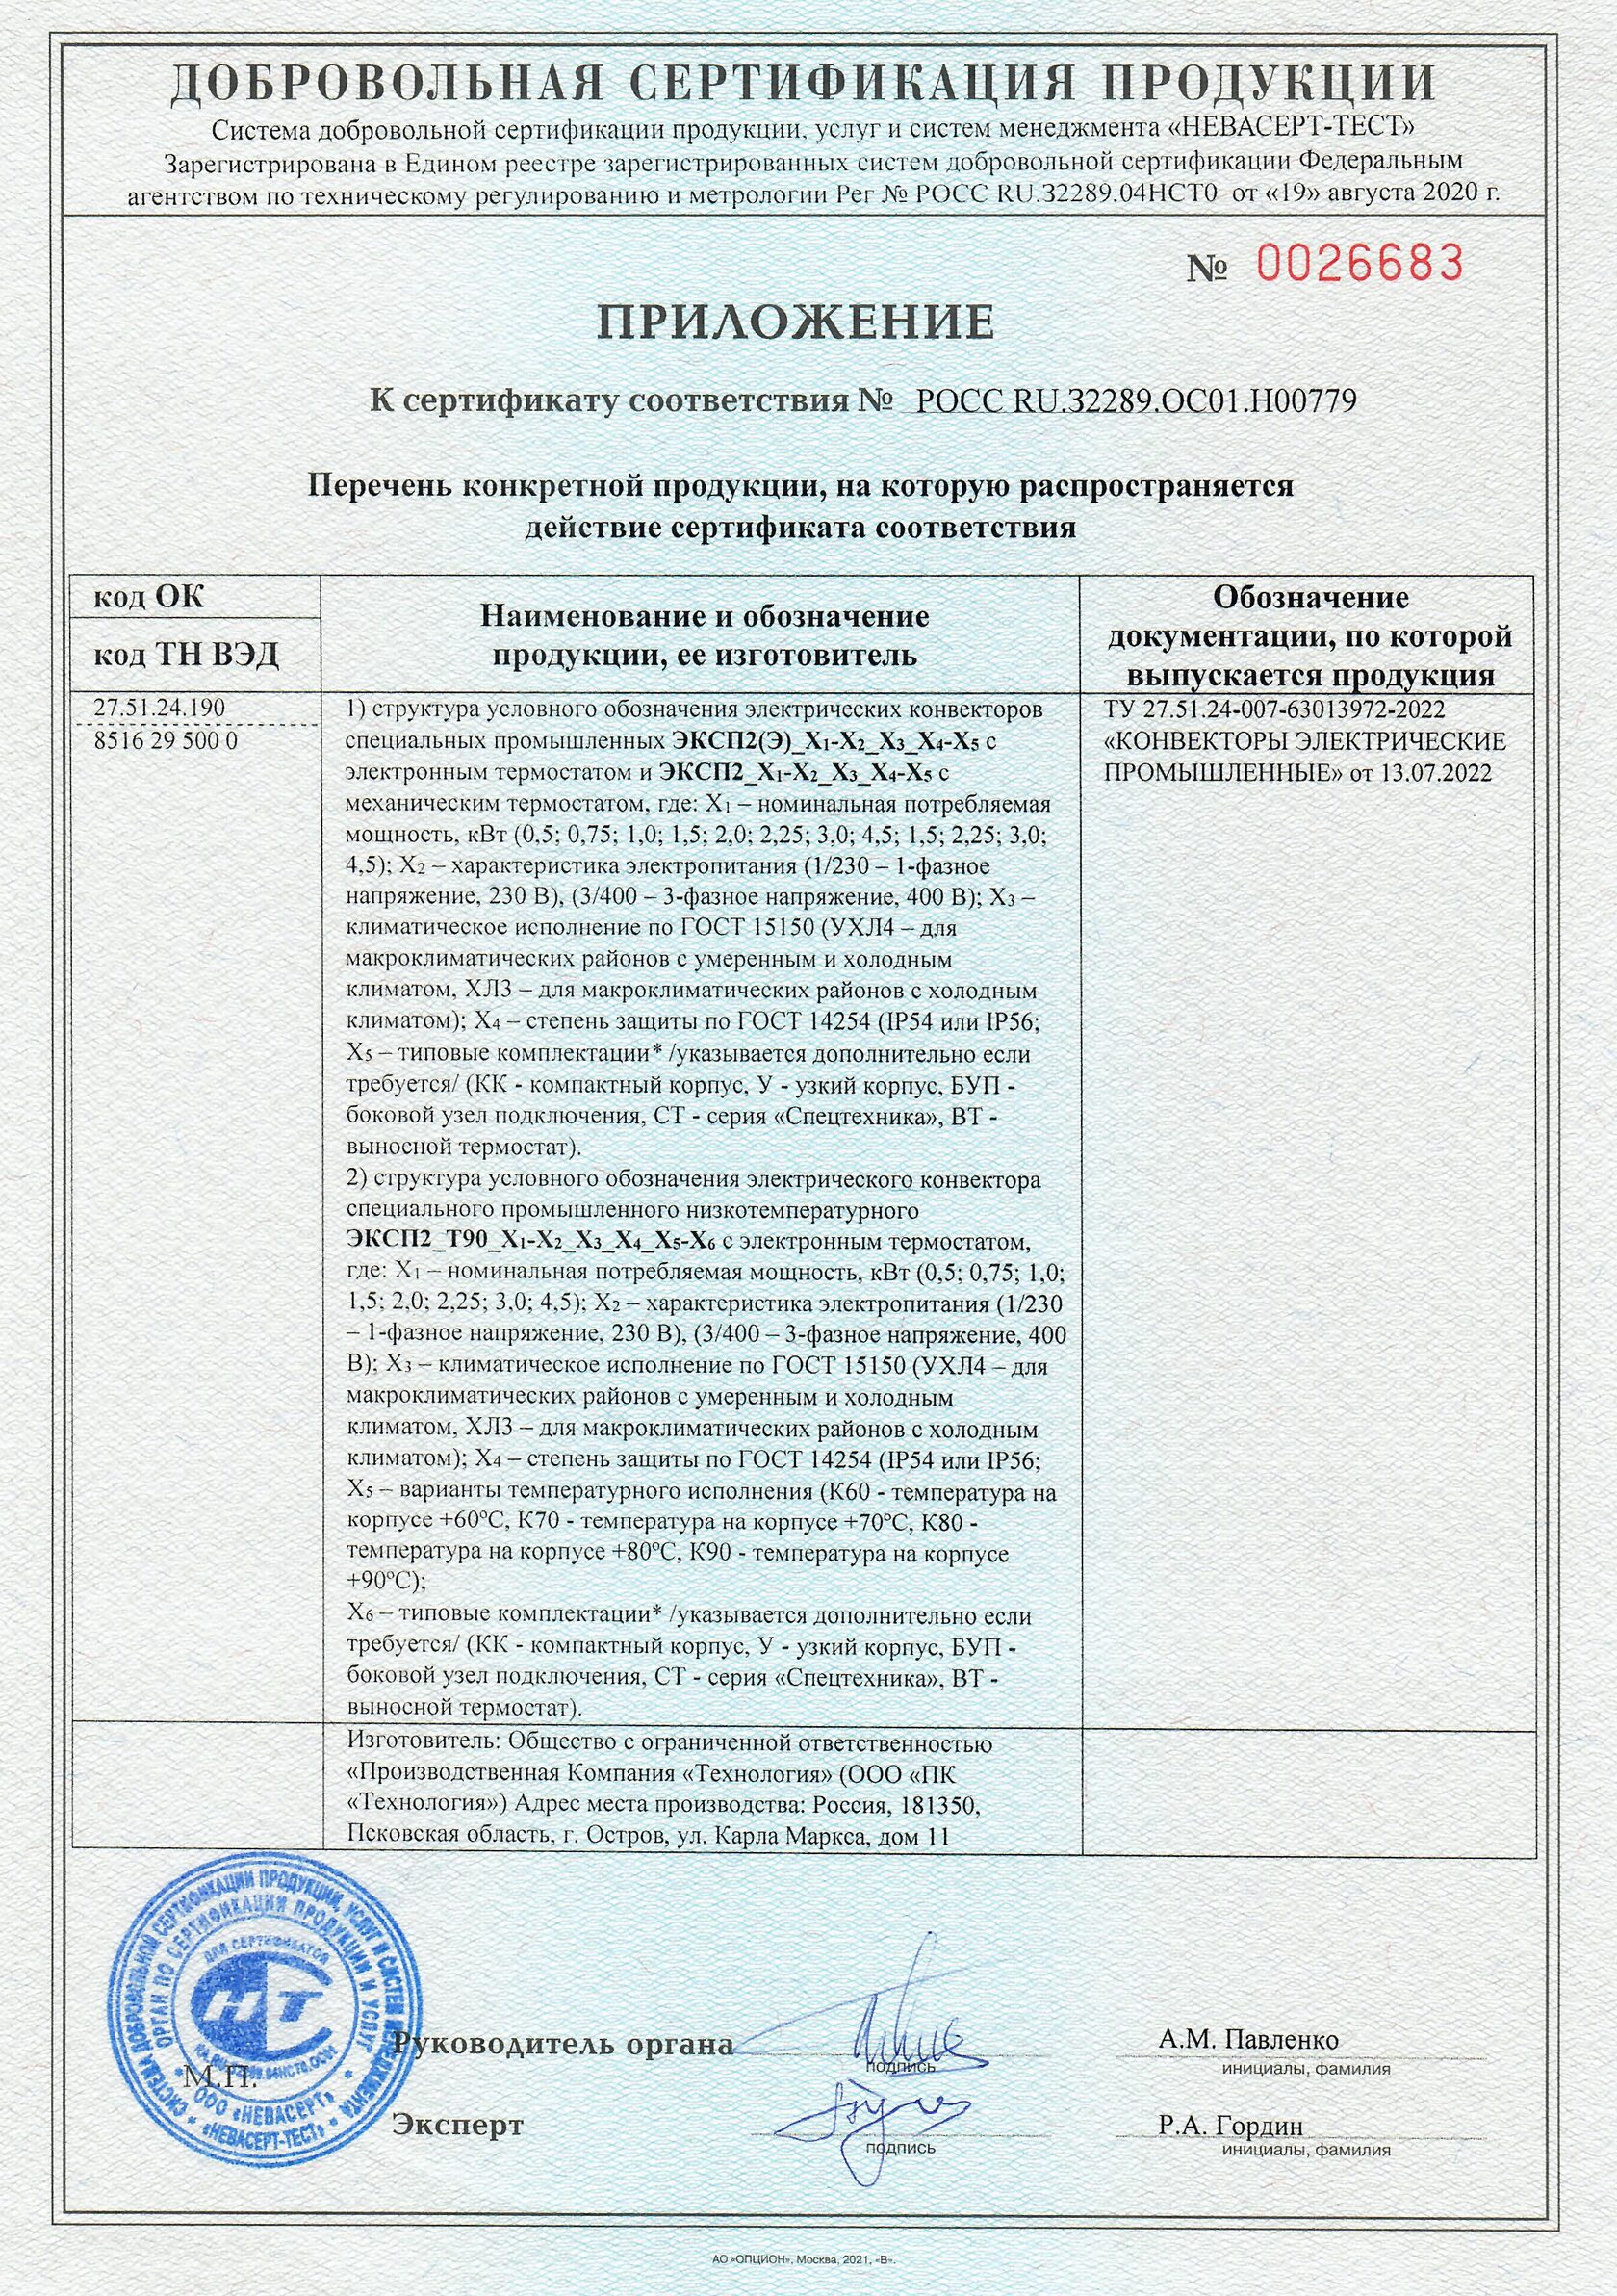 Сертификат соответствия для конвектора ЭКСП2 и ЭКСП2 (Э)